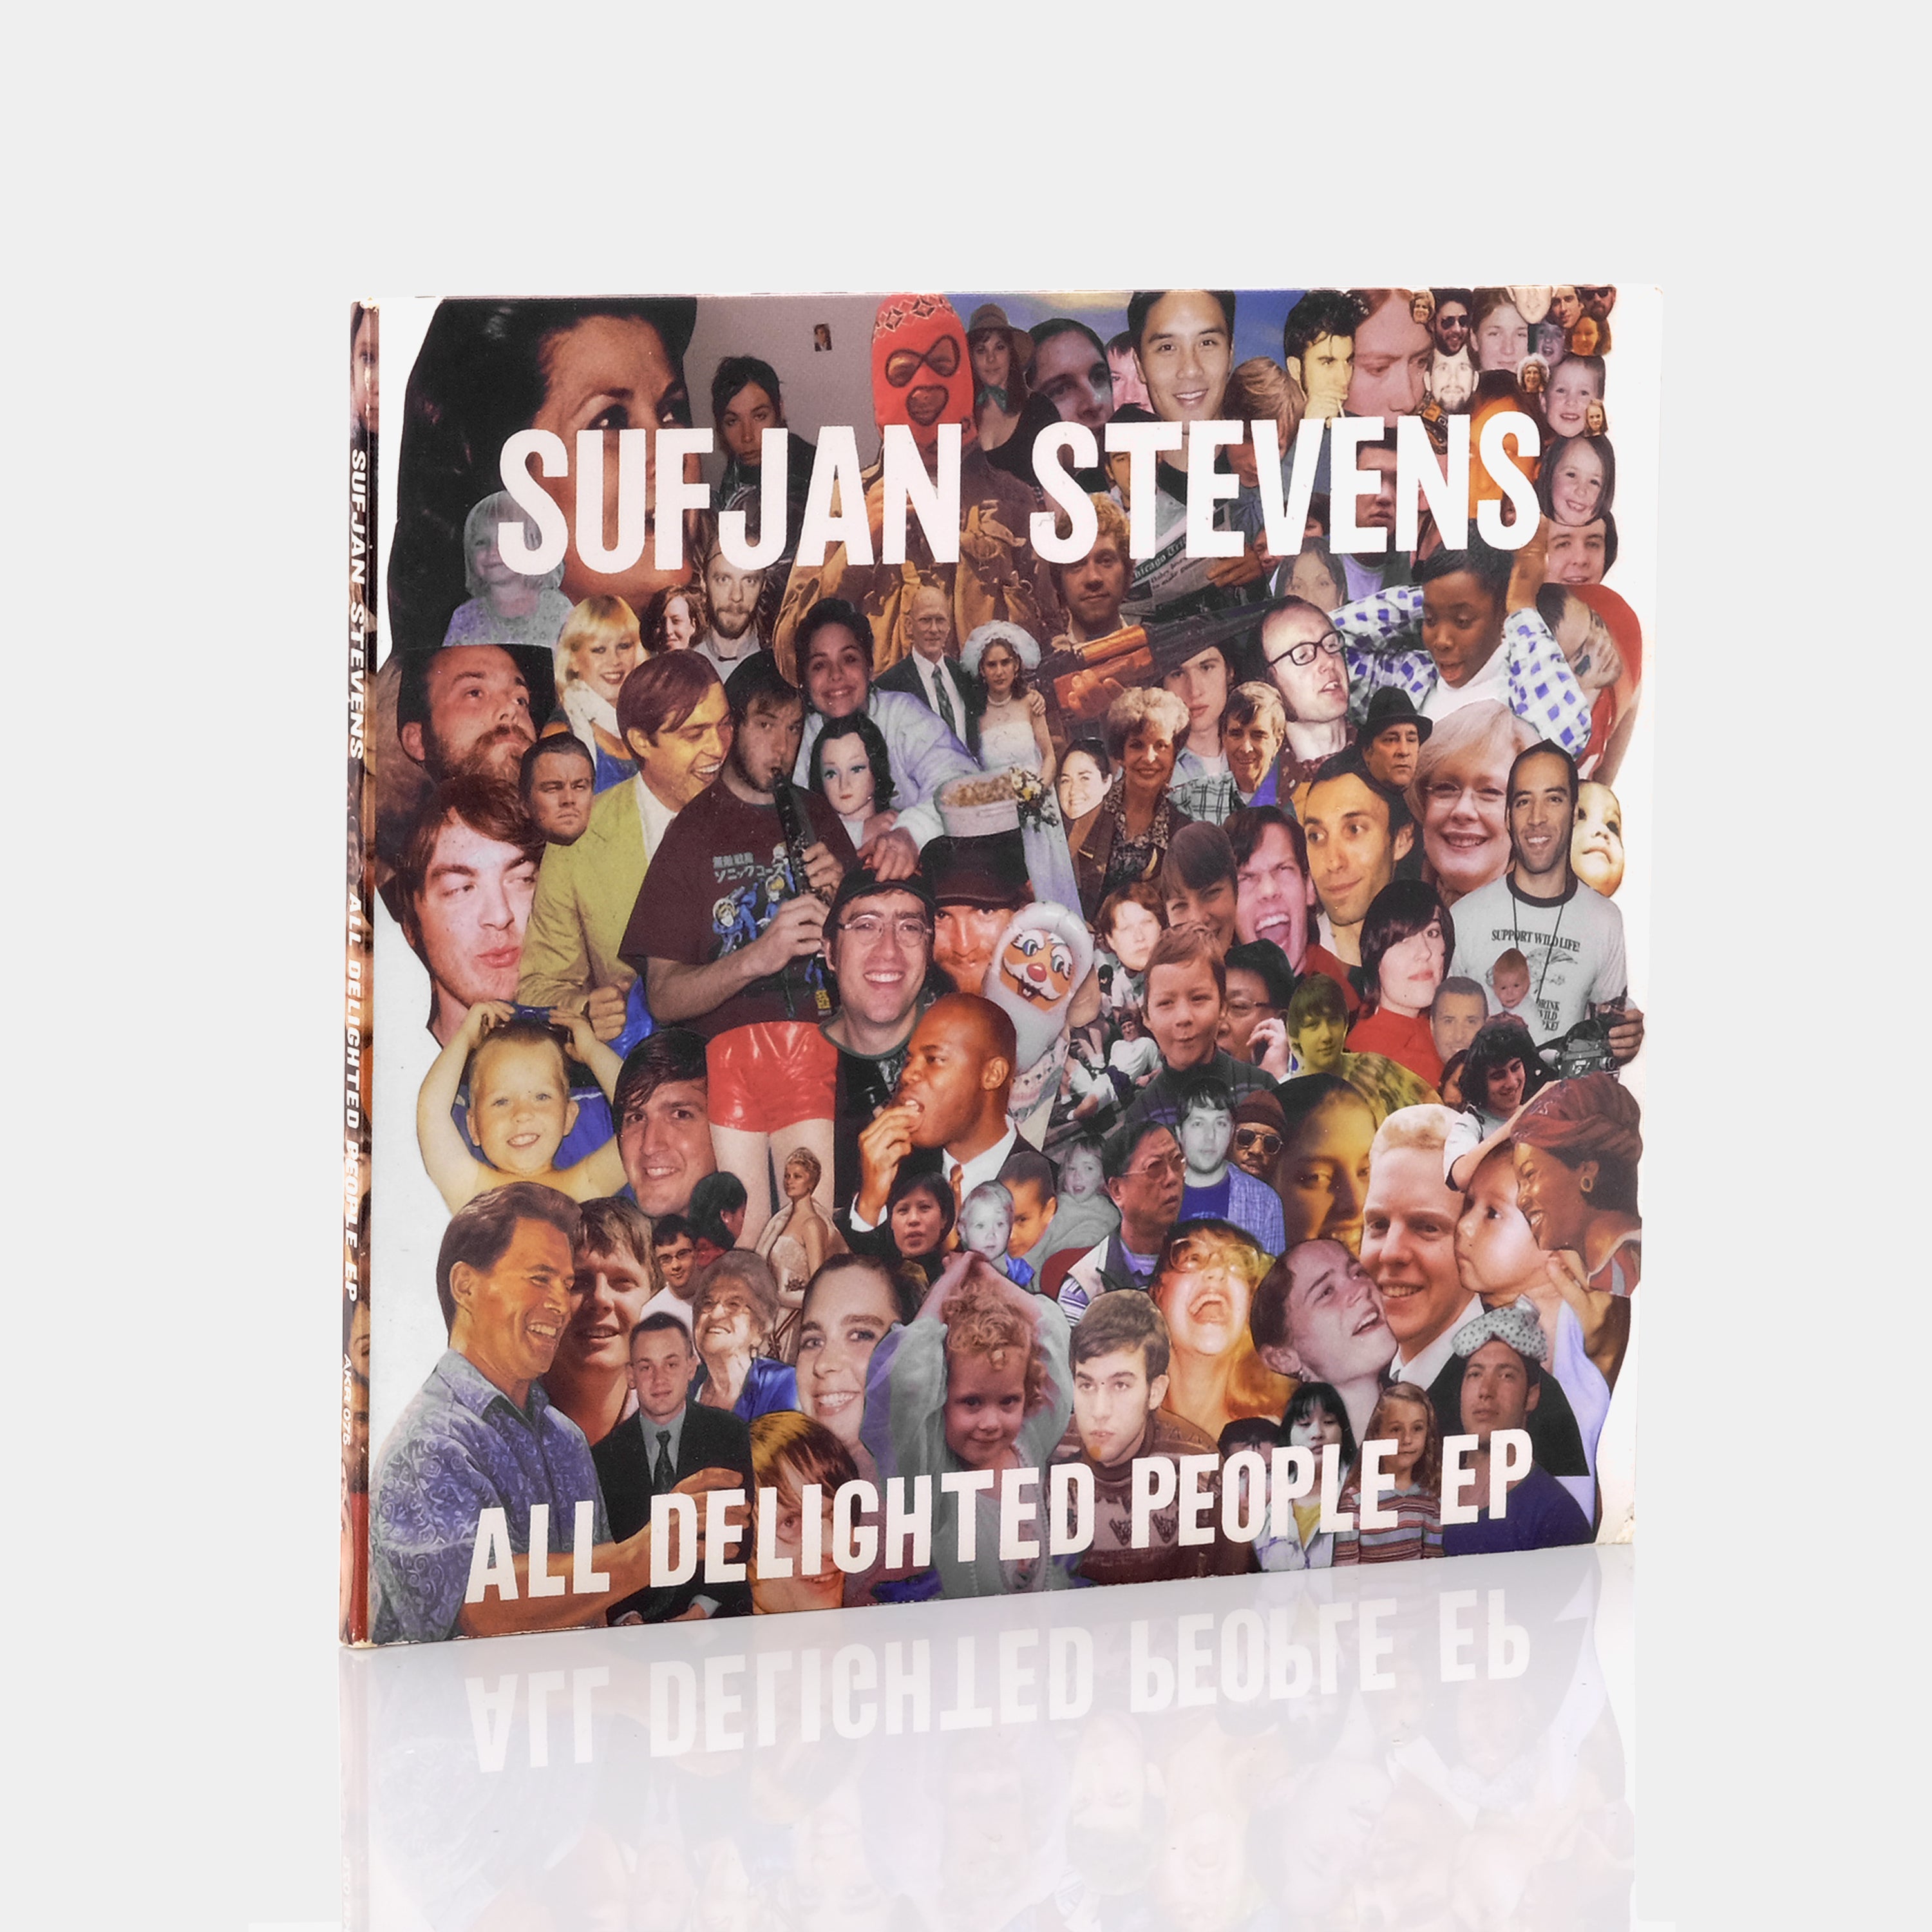 Sufjan Stevens - All Delighted People EP CD